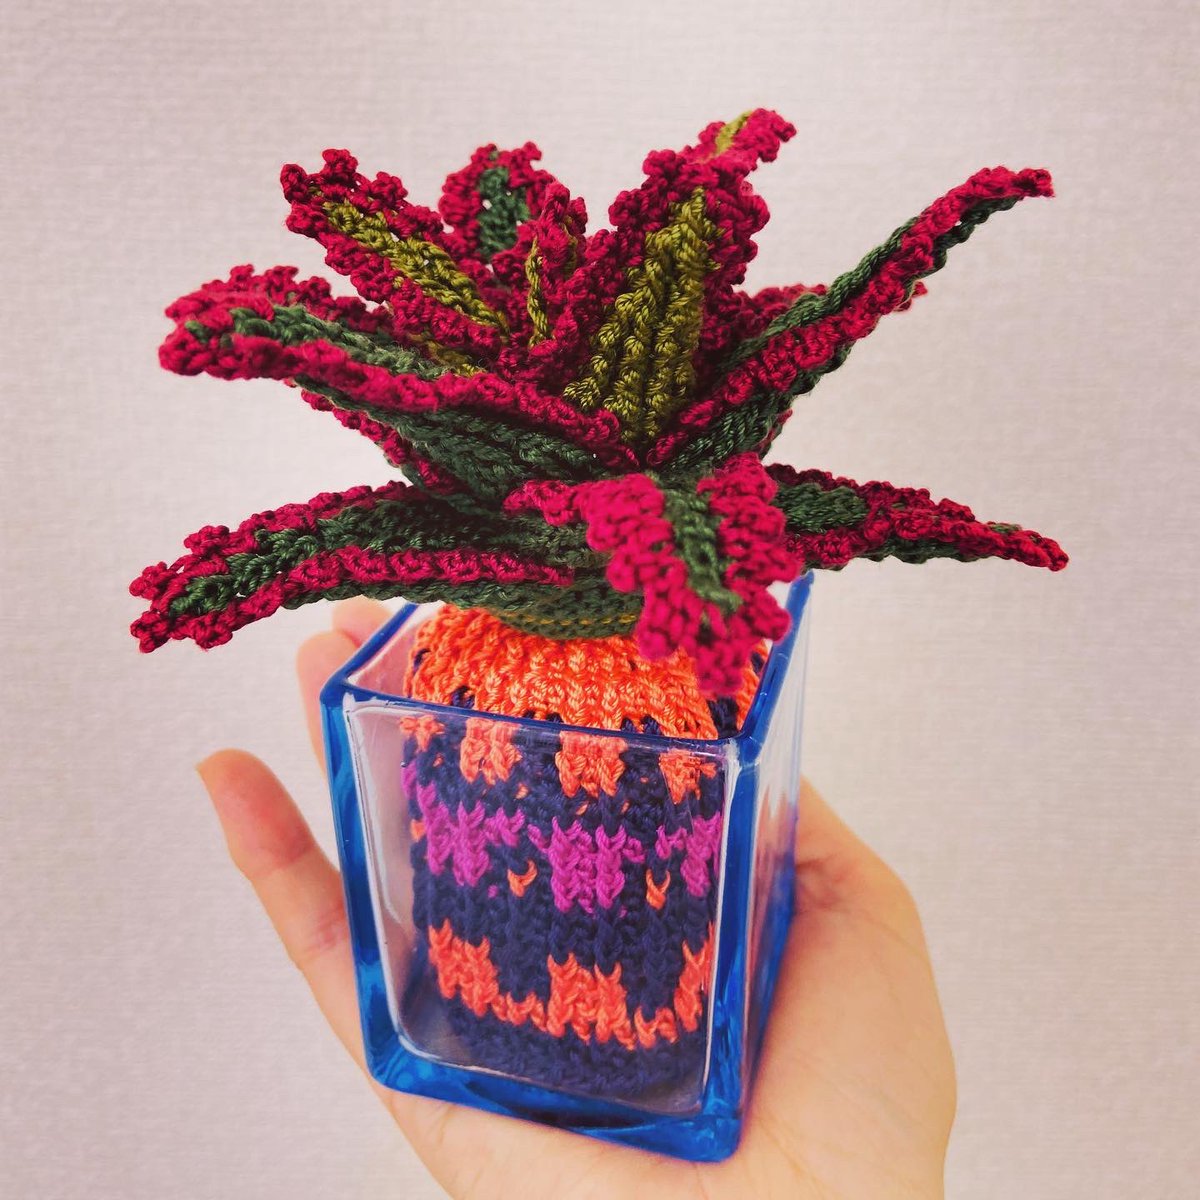 「アロエいろいろ#編み物 #crochet #アロエ #aloe 」|knitting artist alaのイラスト